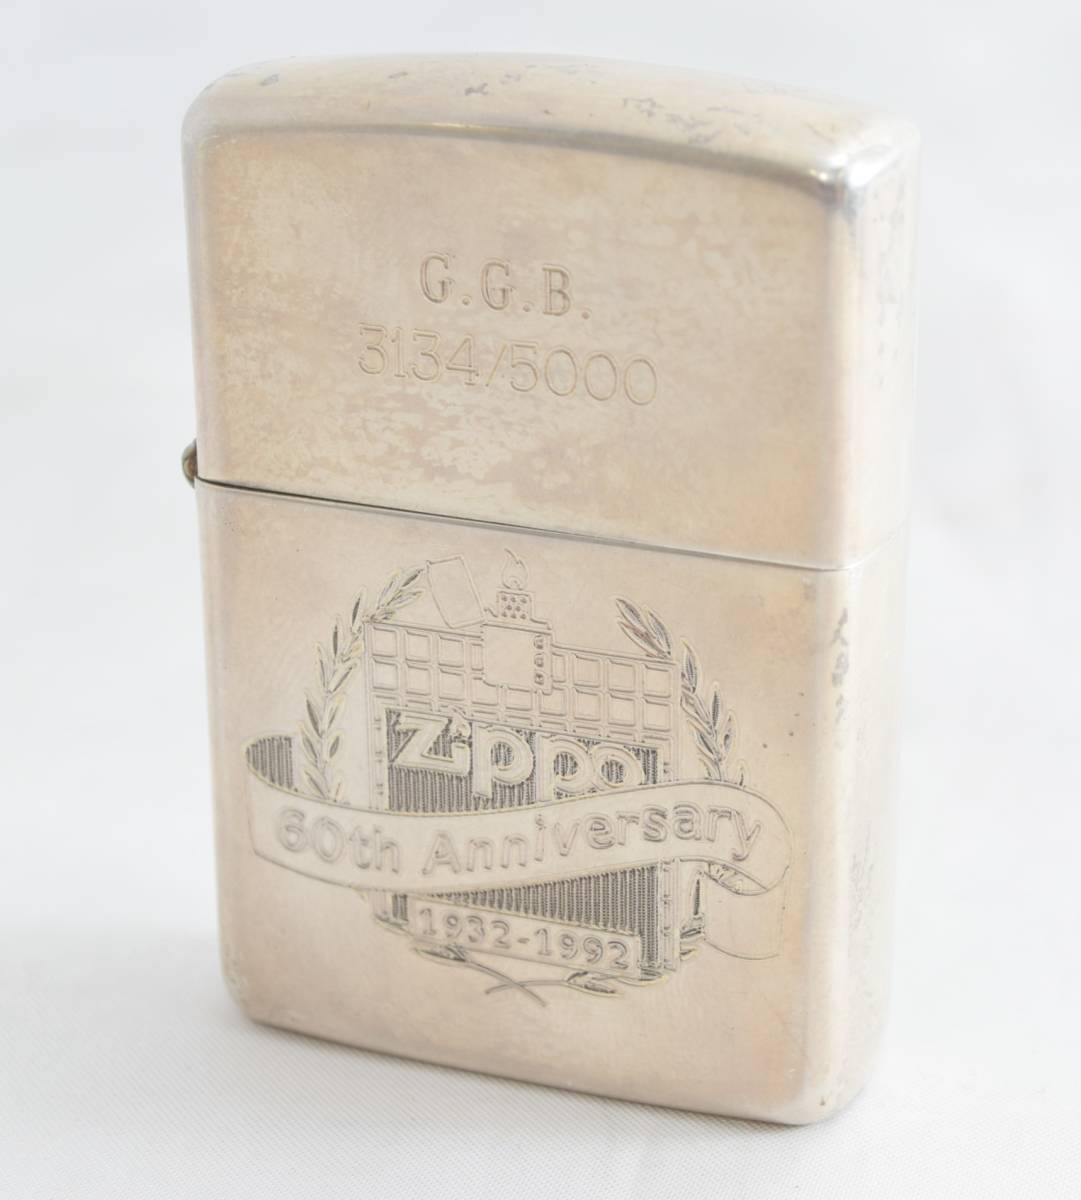 H★ZIPPO ジッポー 60th Anniversary GGB 3134/5000 1932-1992年 スターリングシルバー ライター 喫煙具★_画像1